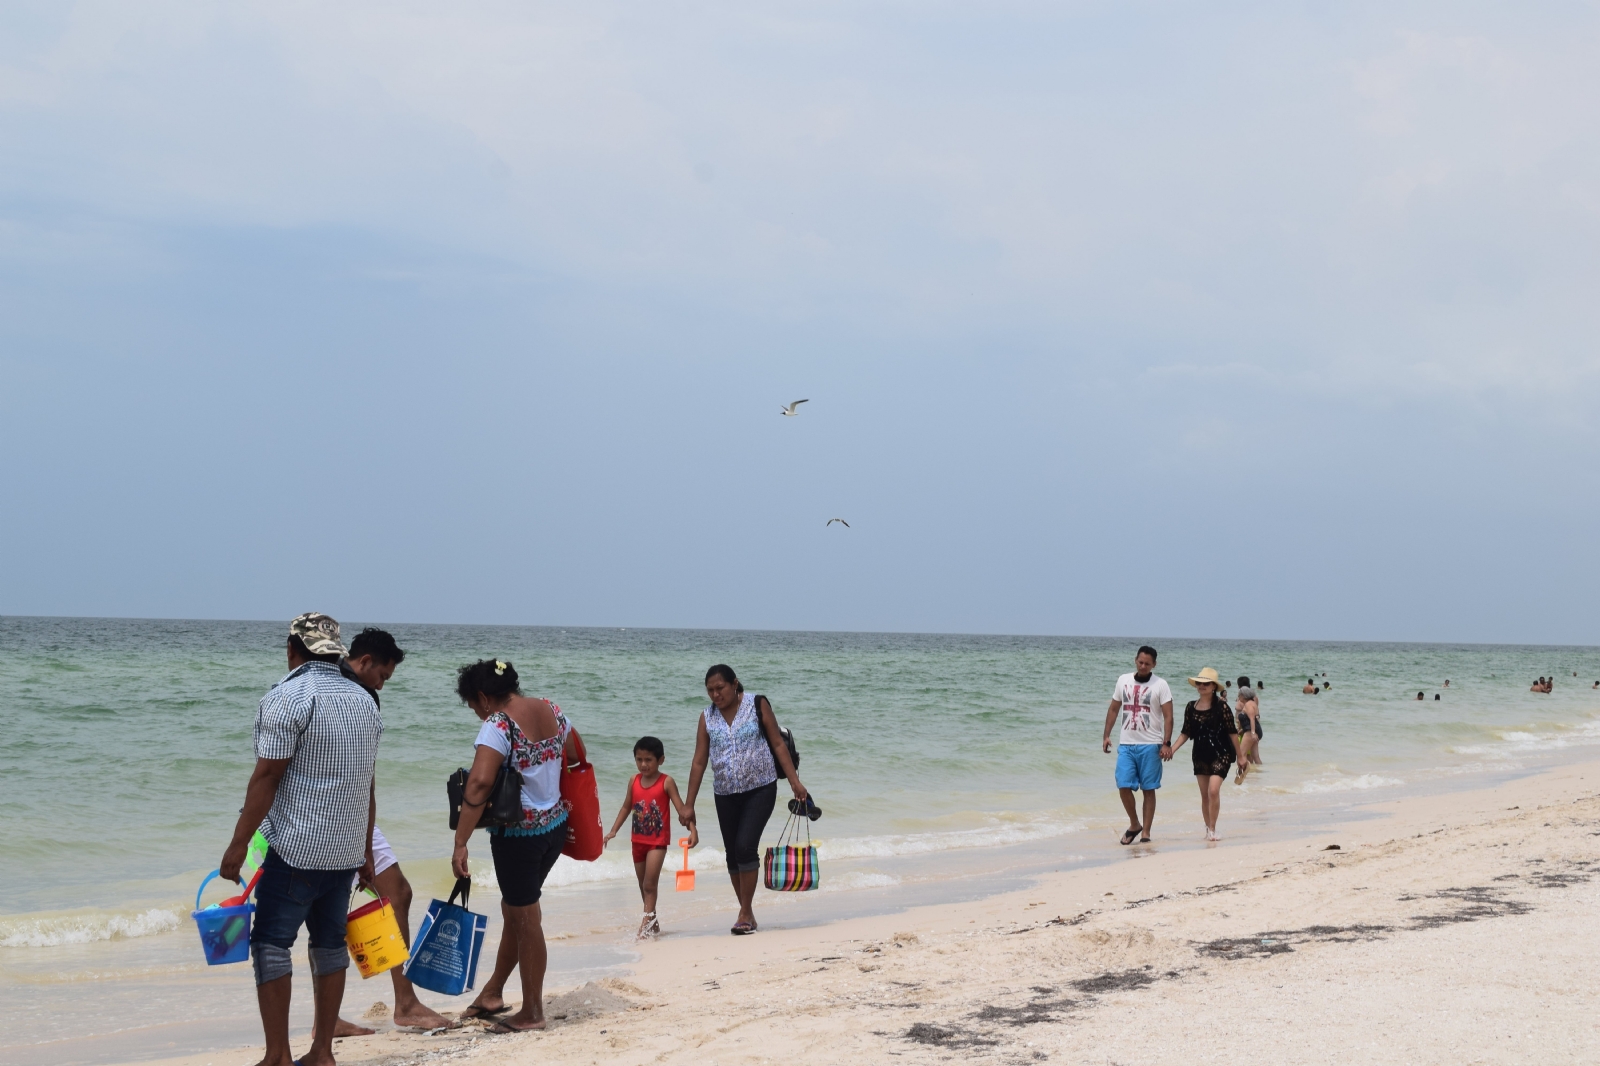 Turbonada no impide llegada de bañistas a las playas de Progreso